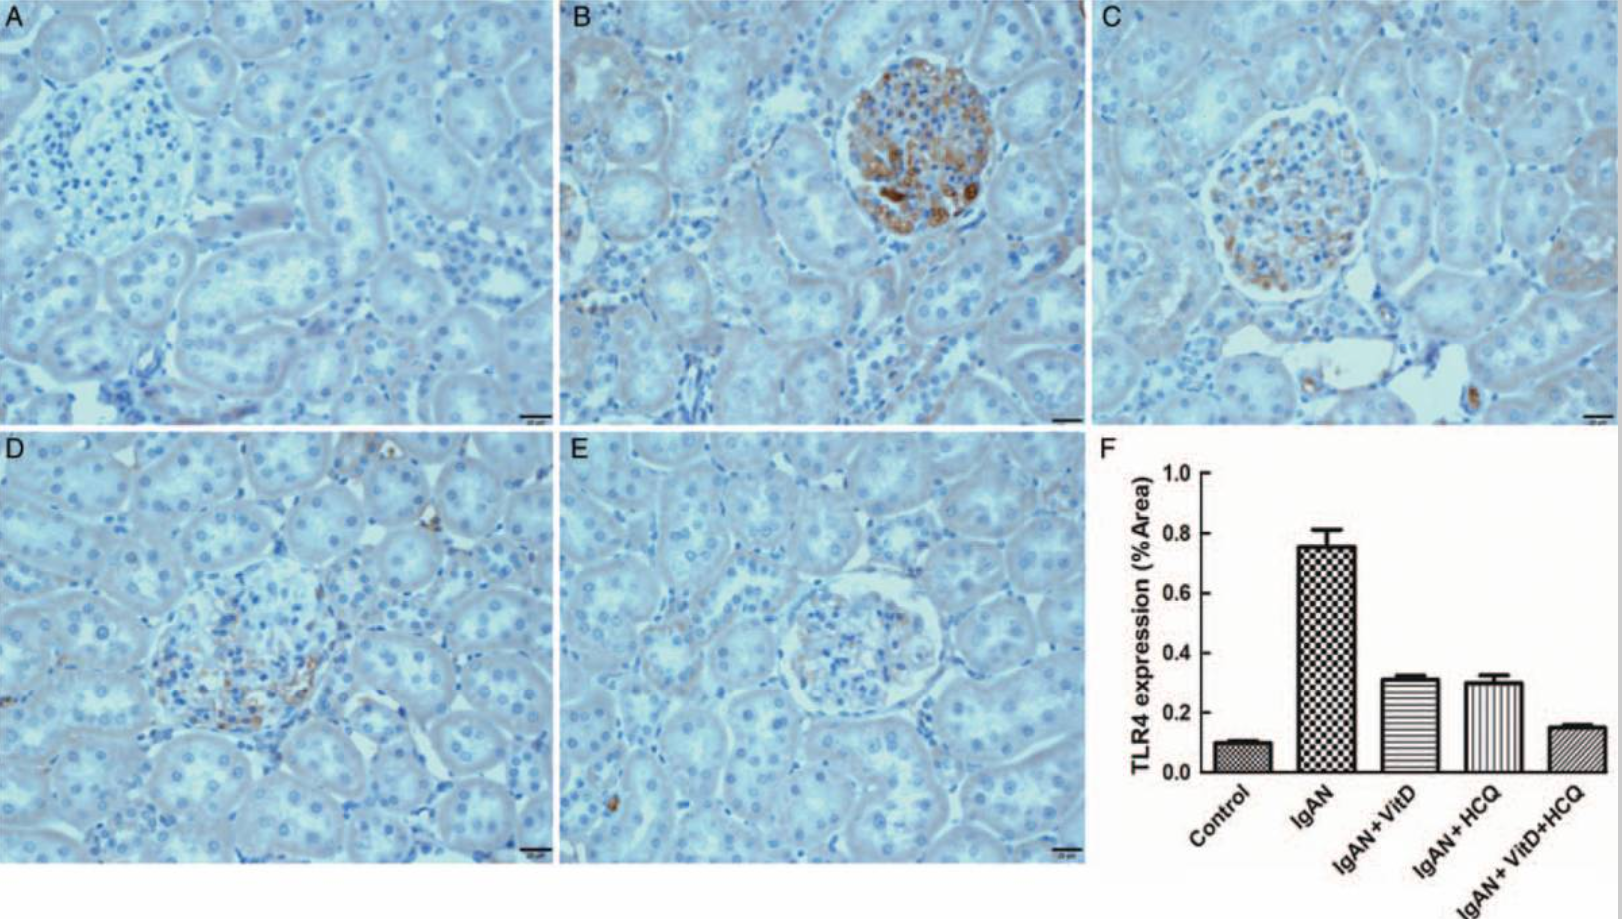 维生素D和羟氯喹通过TLR4减少IgA肾病大鼠模型中的肾损伤和Ki<font color="red">67</font>表达